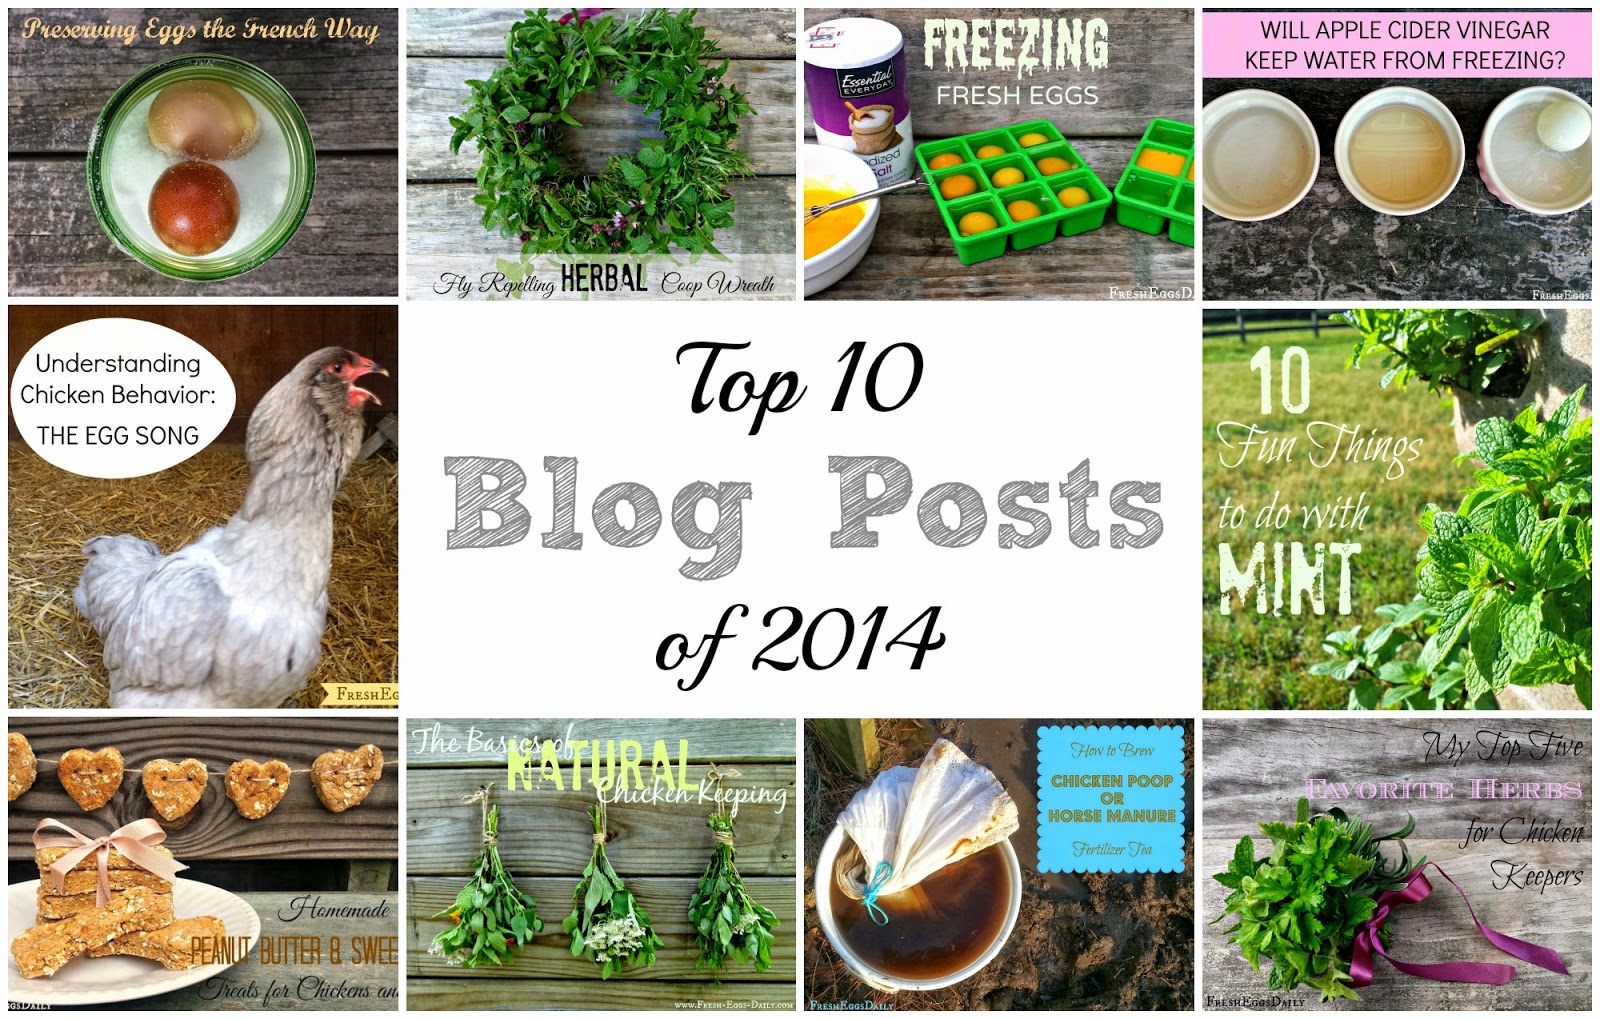 for chick coop: Top Ten Blog Posts of 2014